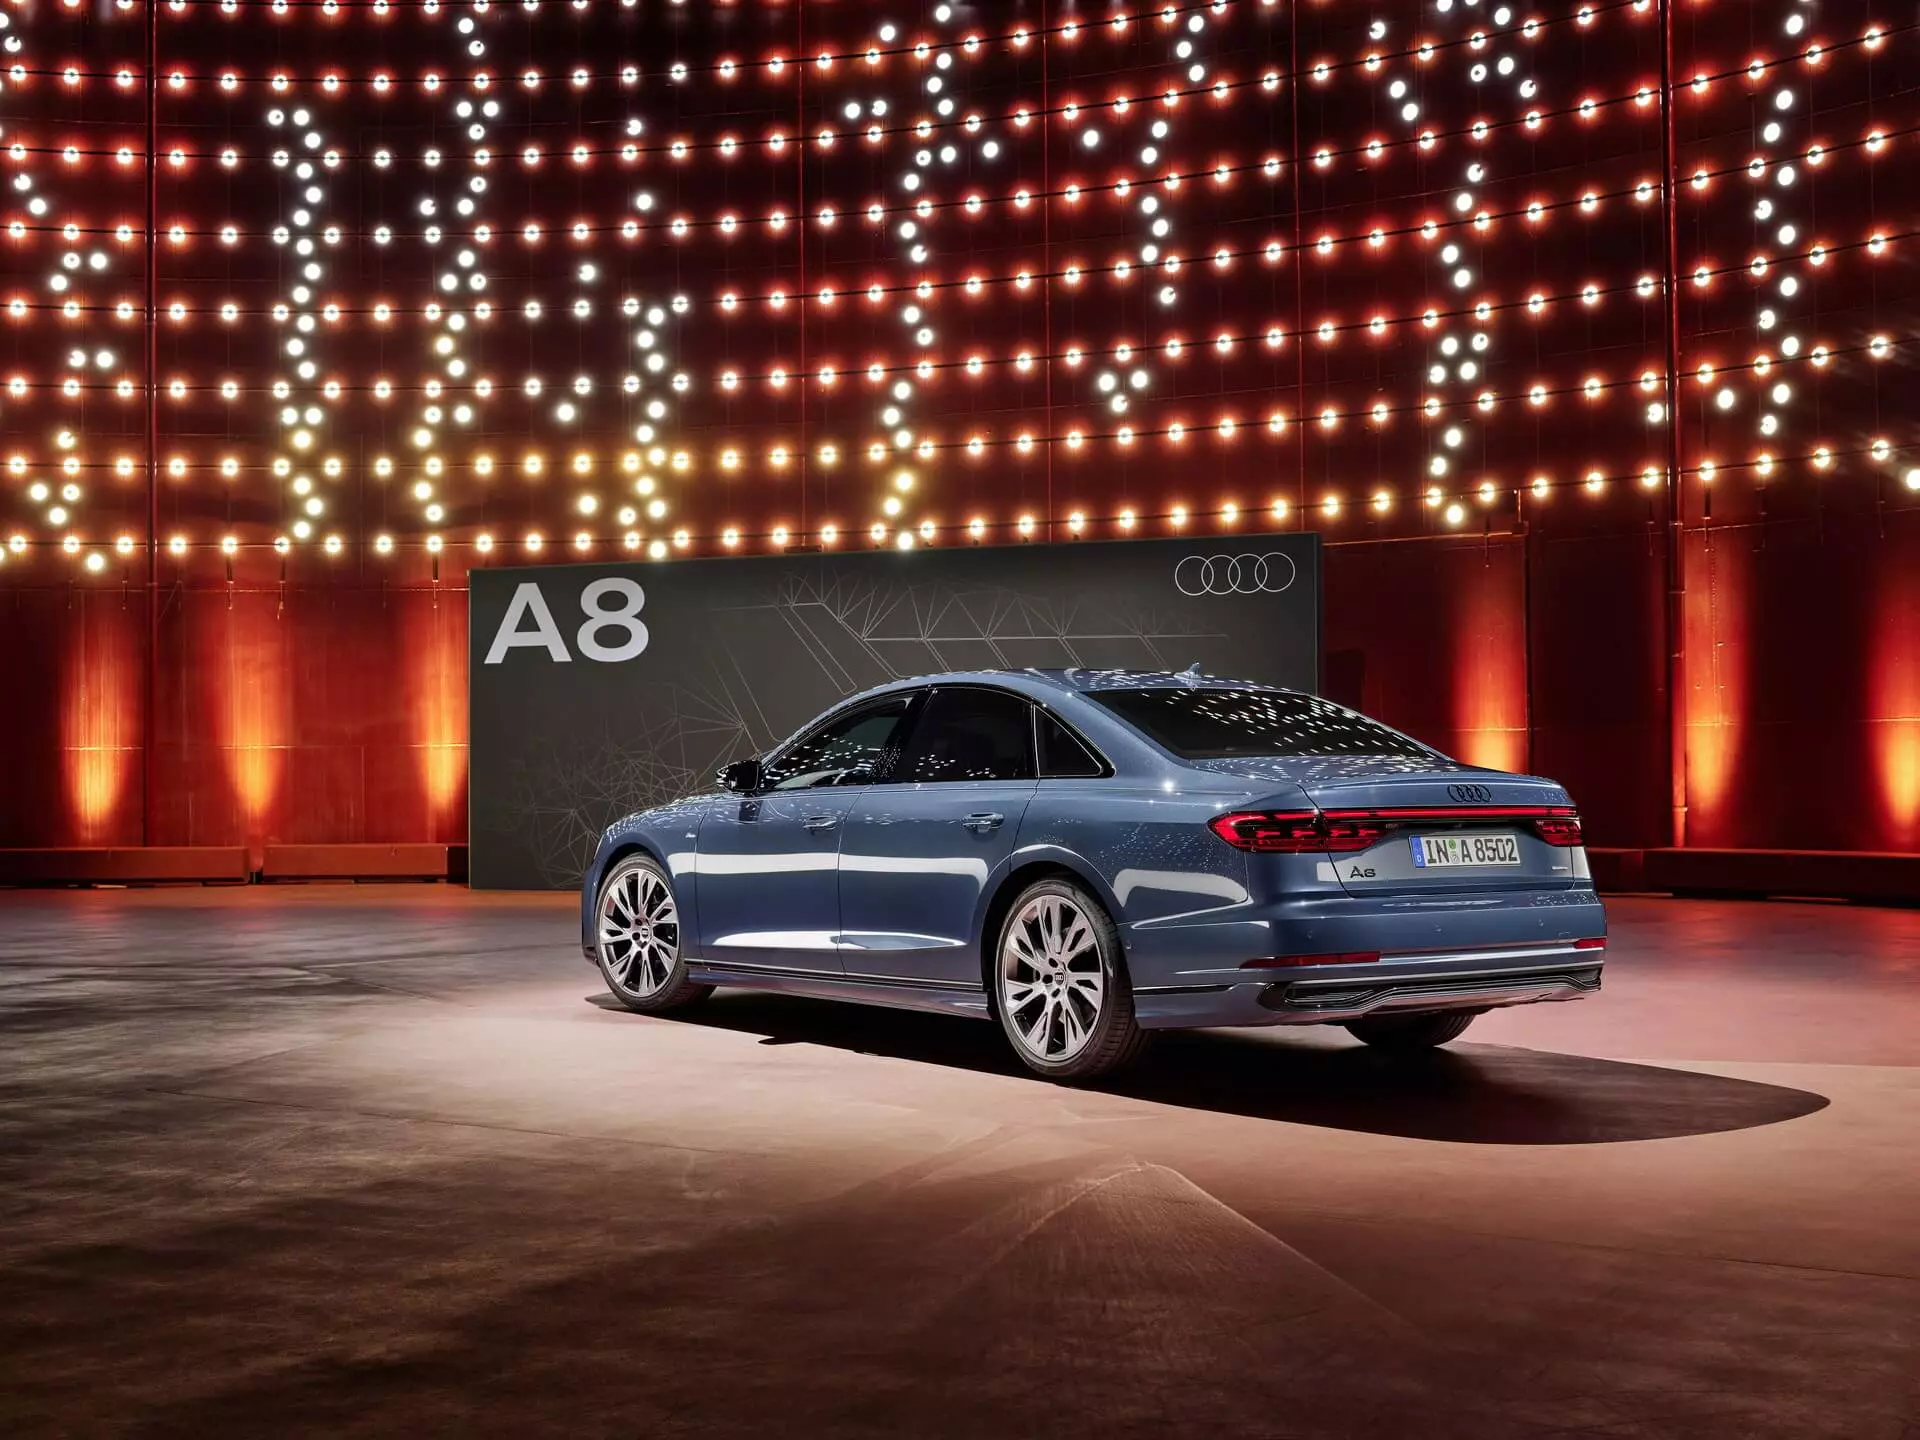 “Audi A8 S Line”